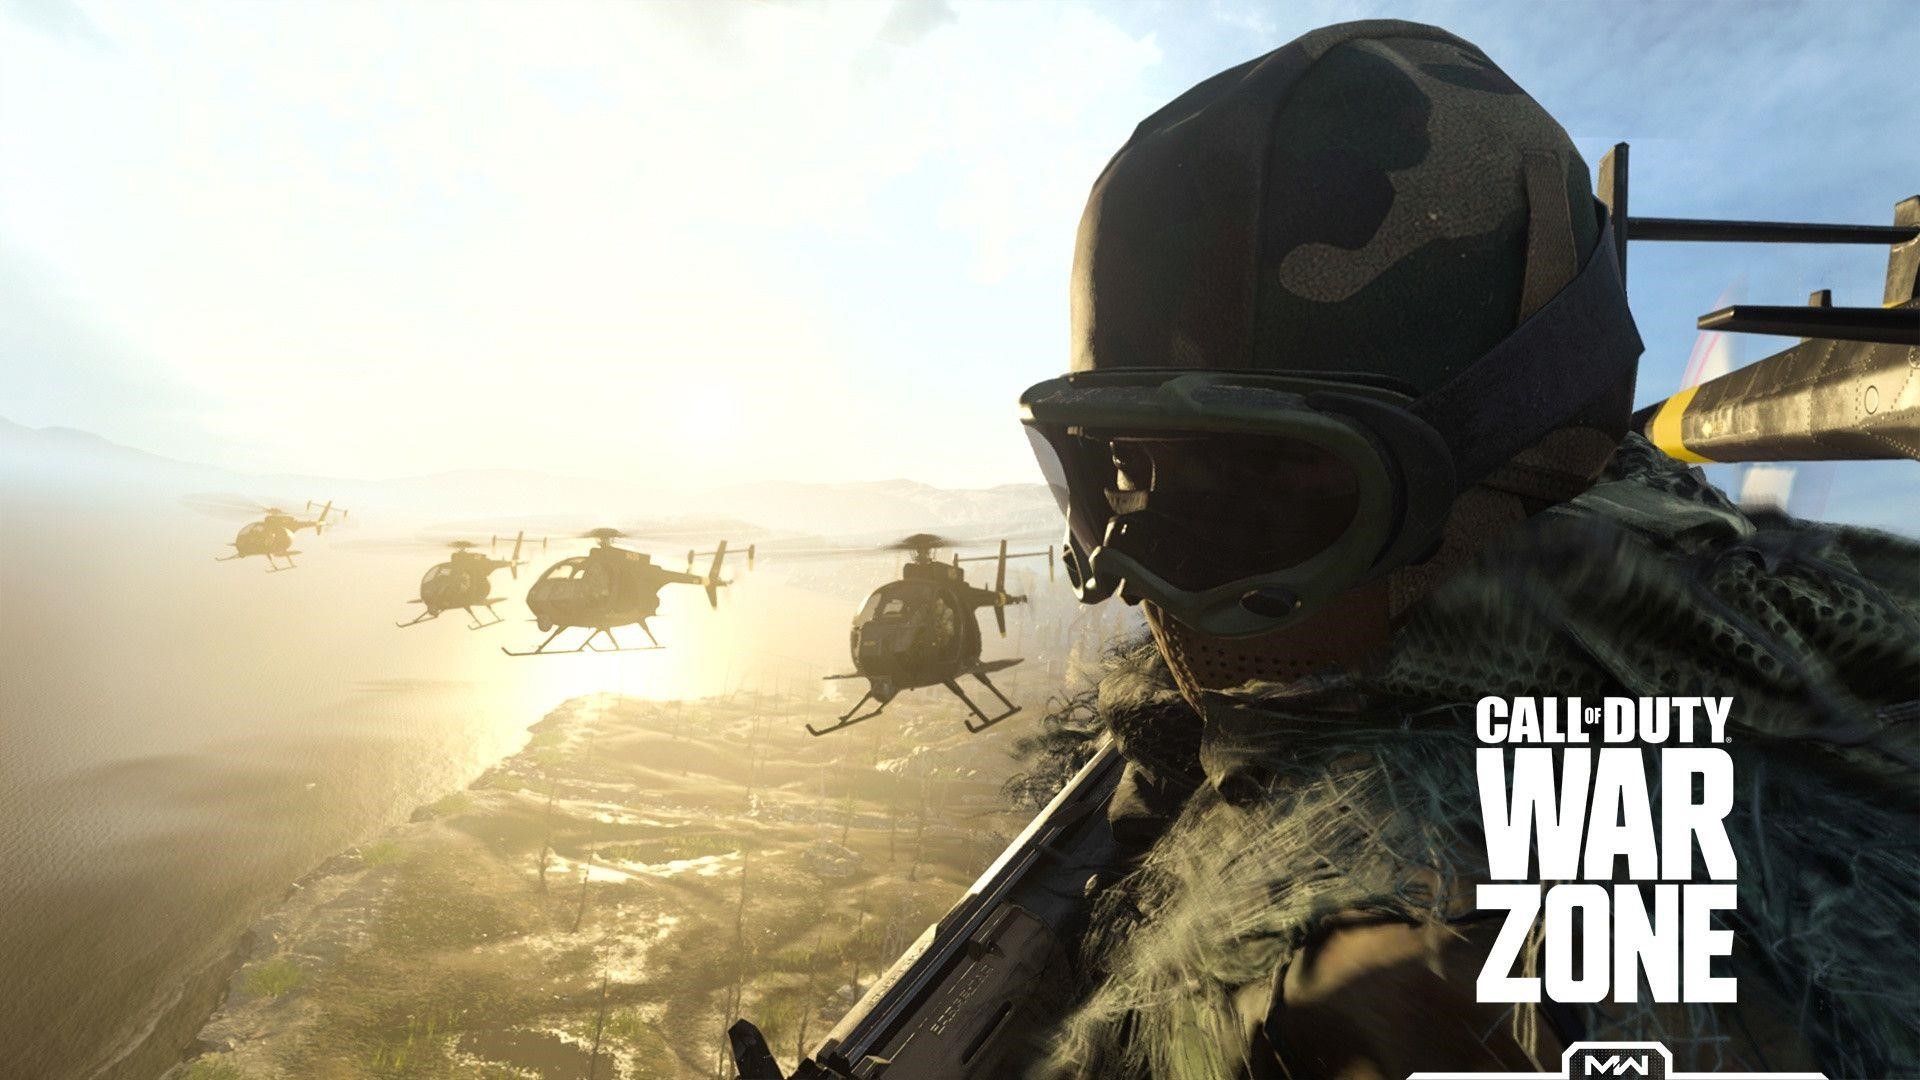 Call Of Duty: Warzone là một trò chơi điện tử thuộc thể loại bắn súng góc nhìn thứ nhất, thu hút hàng triệu người chơi trên toàn thế giới. Trò chơi mang đến trải nghiệm chiến đấu hấp dẫn và đồ họa sống động, đưa người chơi vào cuộc chiến giữa các đội đối đầu trong một bản đồ rộng lớn.